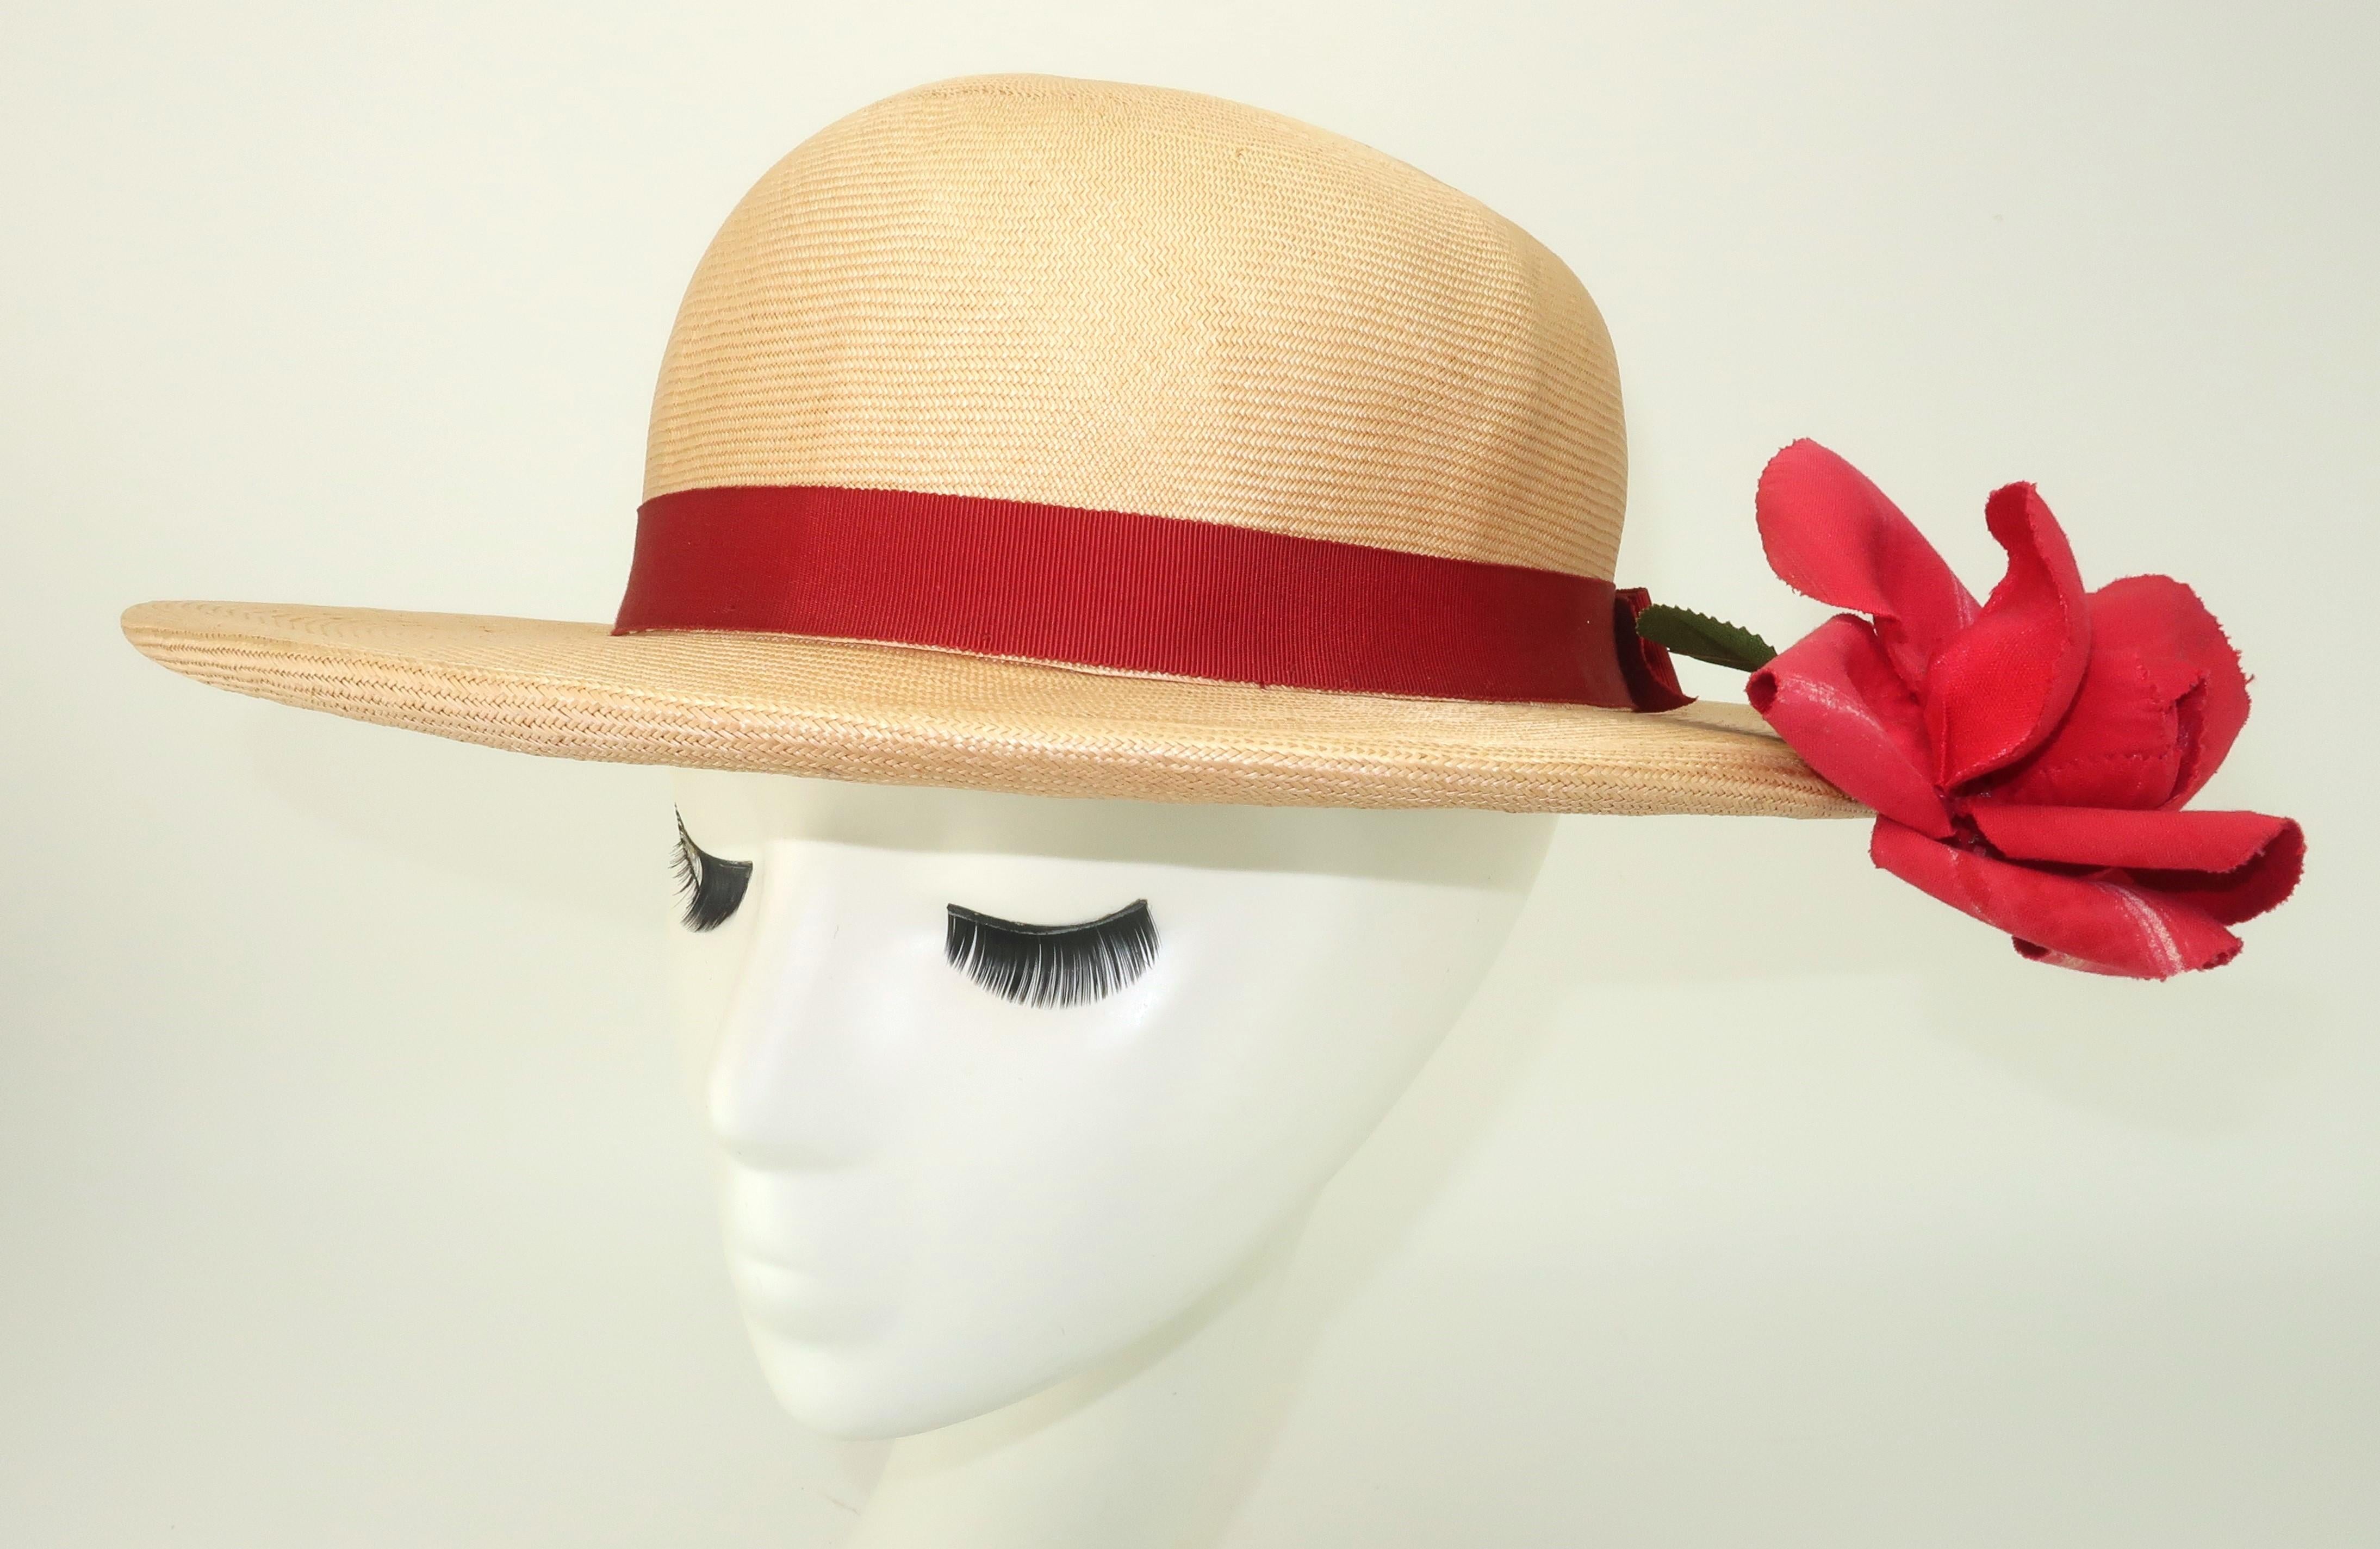 Natürlicher Strohhut von Dolly Madison aus den 1950er Jahren mit rotem Ripsband und Schleife mit roter Rose.  Dieser clevere Hut hat eine charmante Überraschung ... die Rose scheint unter der Krempe zu wachsen, mit nur einem Hauch von grünen